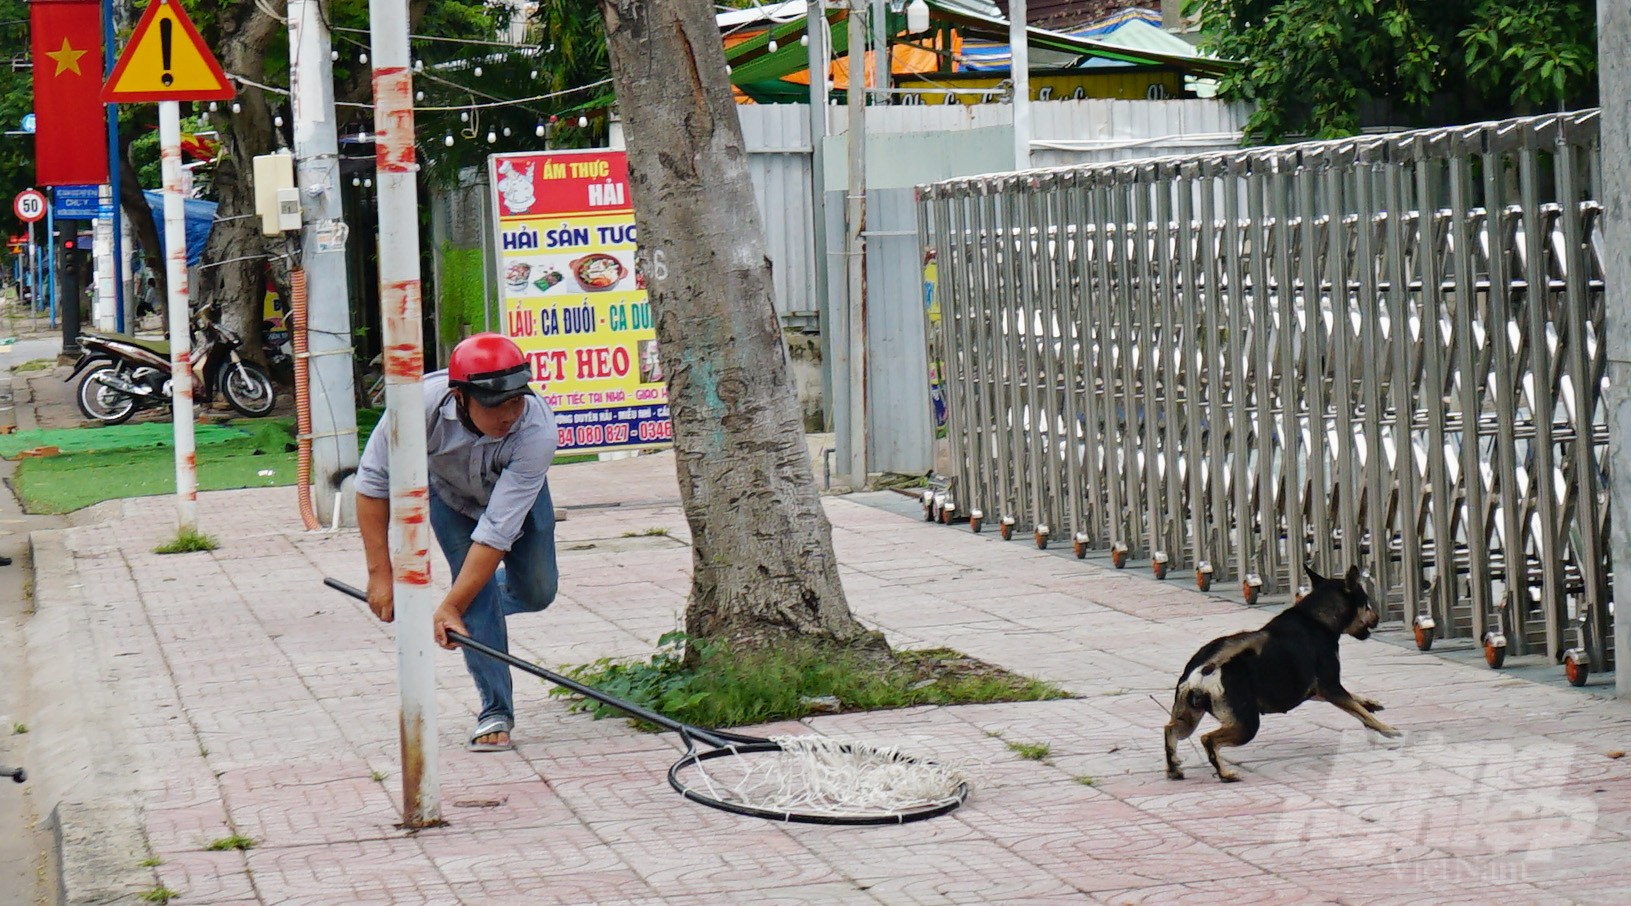 Thị trấn Cần Thạnh quyết tâm bắt nhốt và không để tình trạng chó thả rông làm ảnh hưởng đến phương tiện tham gia giao thông, người dân và khách du lịch. Ảnh: Lê Bình.